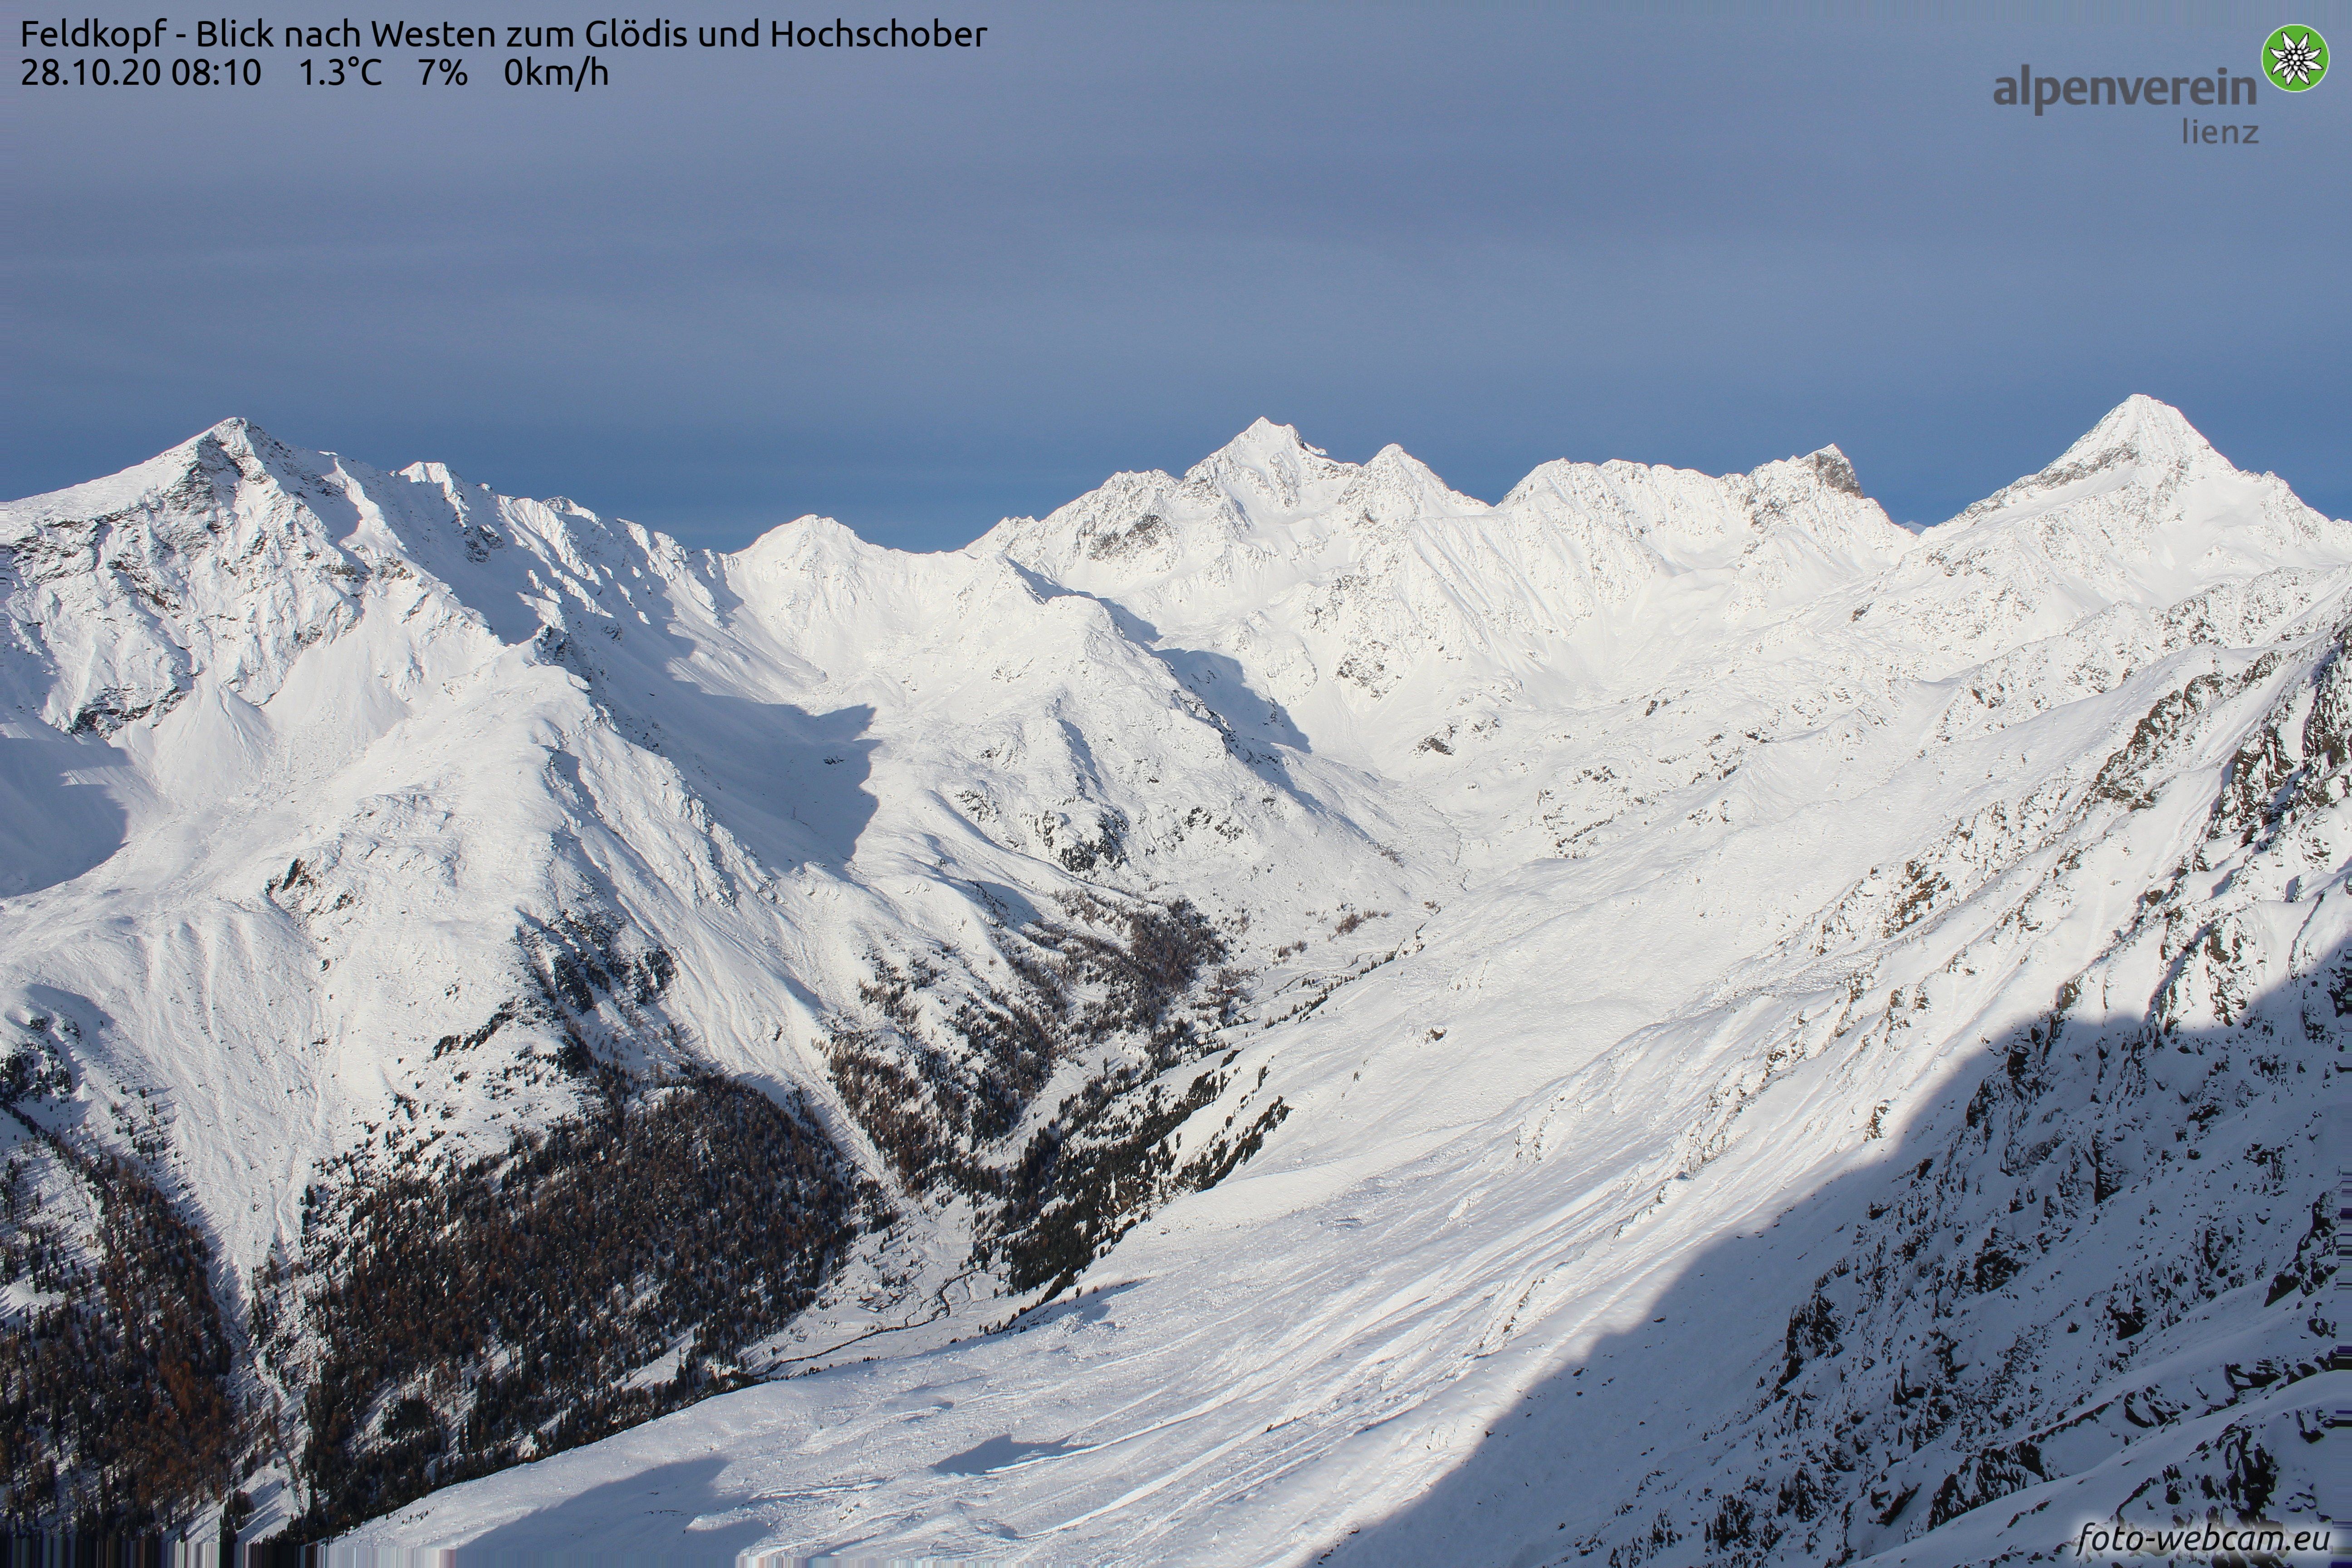 Vorige week was Osttirol (hier met zicht op de Glödis (3206m) bij Lienz) goed wit geworden...